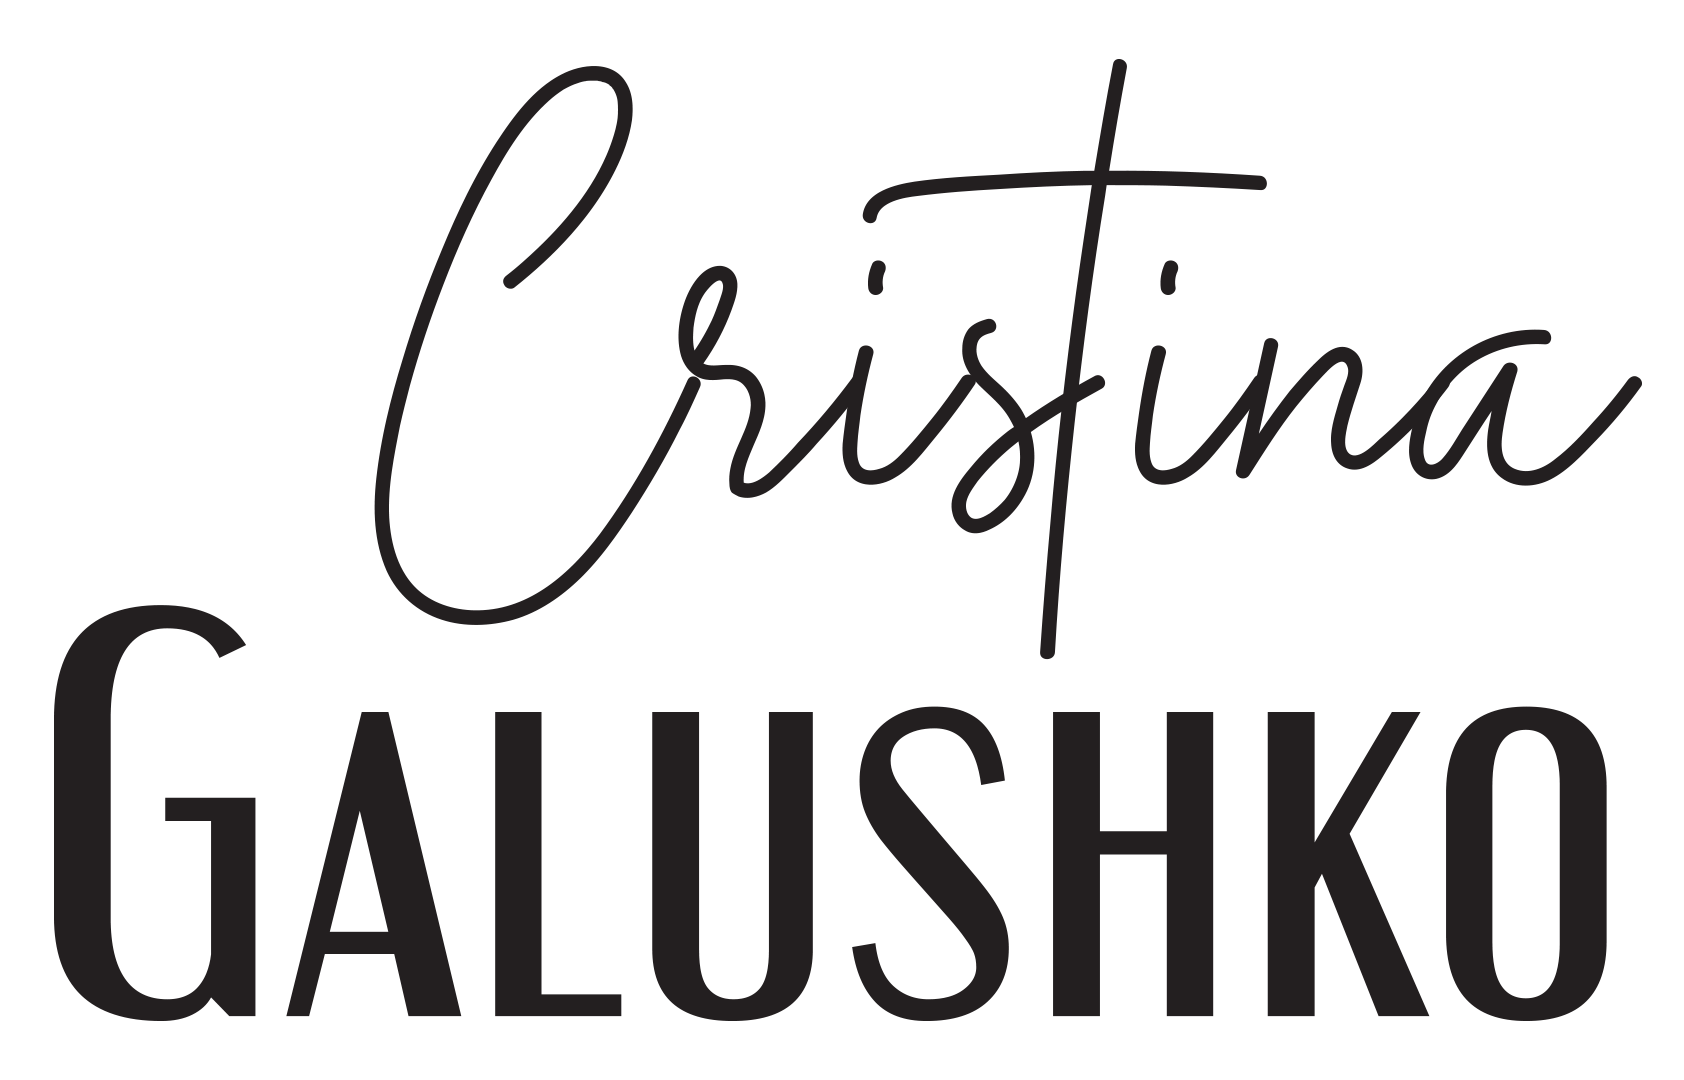 Cristina Galushko 